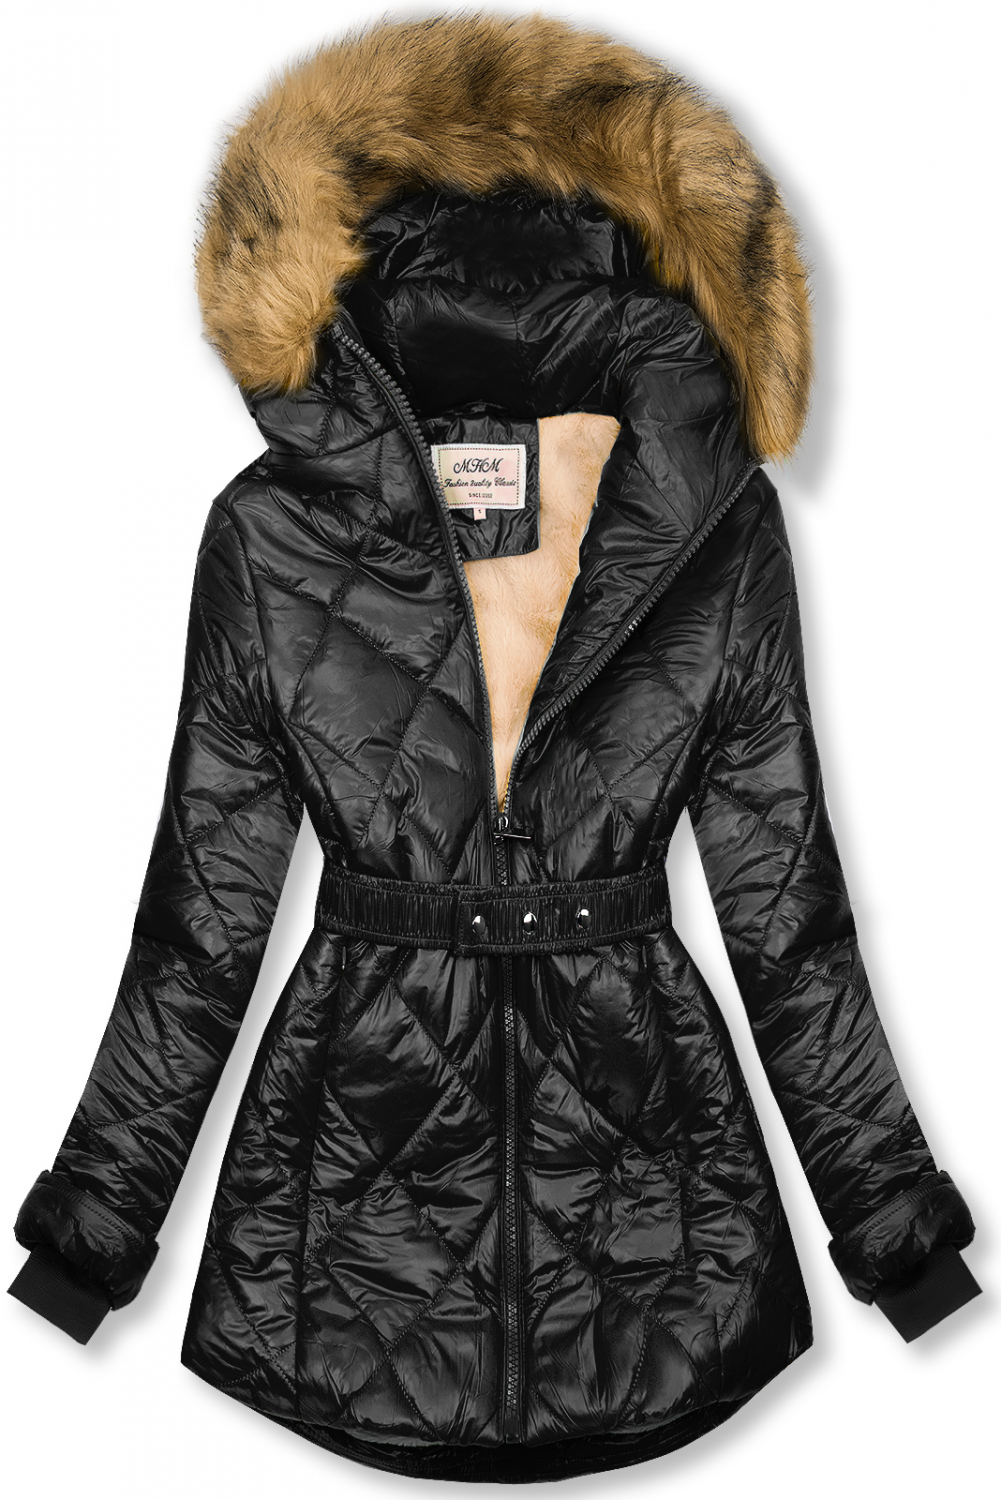 Čierno-béžová lesklá zimná bunda s opaskom.
- neodopínateľná kapucňa
- odnímateľná kožušina
- zapínanie na zips
- v prednej časti 2 vrecká 
- vnútro zateplené plyšom
- s opaskom
- materiál: 100% polyester, podšívka: 100% polyester
 